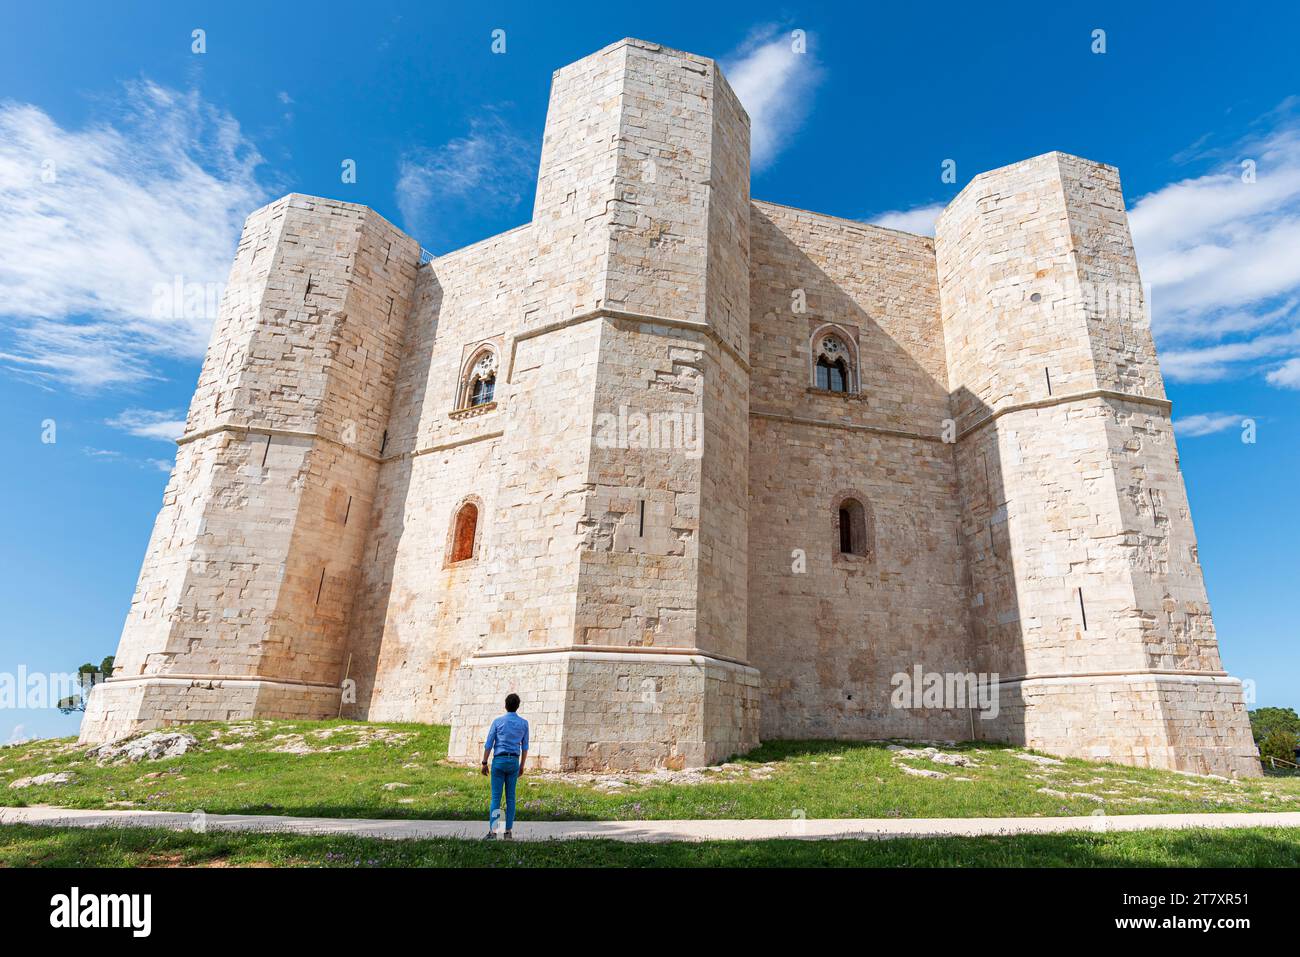 L'uomo ammira il castello ottagonale di Castel del Monte in una chiara giornata di sole, patrimonio dell'umanità dell'UNESCO, Puglia, Italia meridionale, Europa Foto Stock